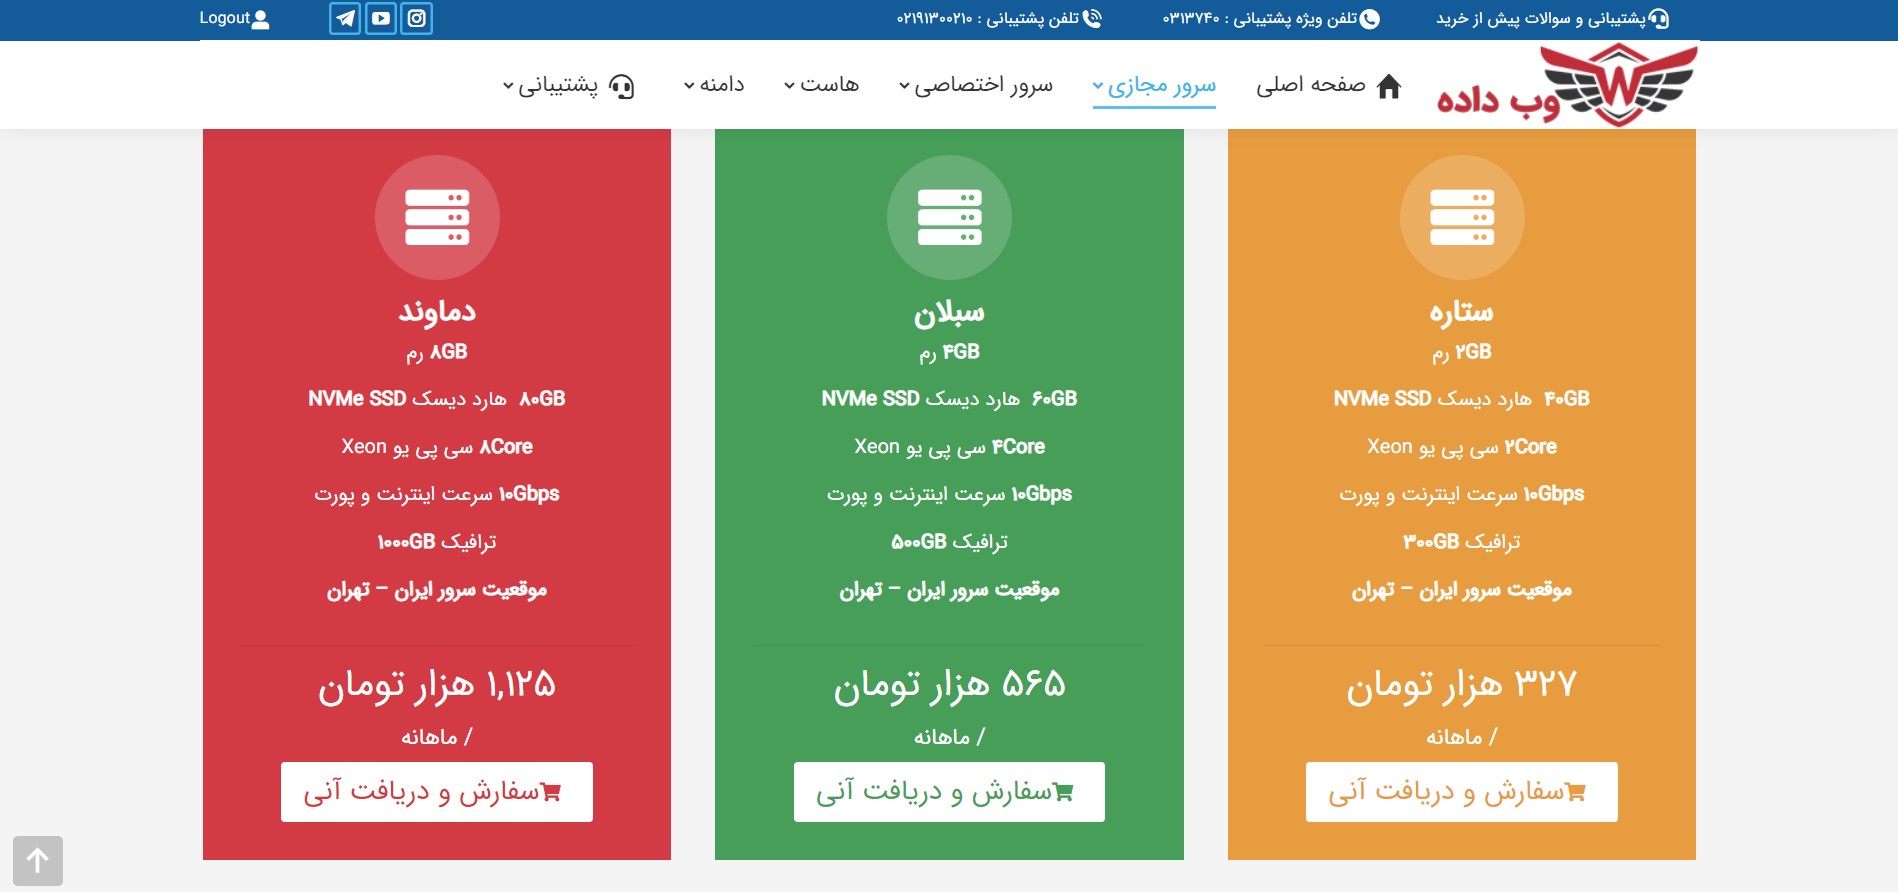 سرور مجازی ایران با ارسال فوری اطلاعات